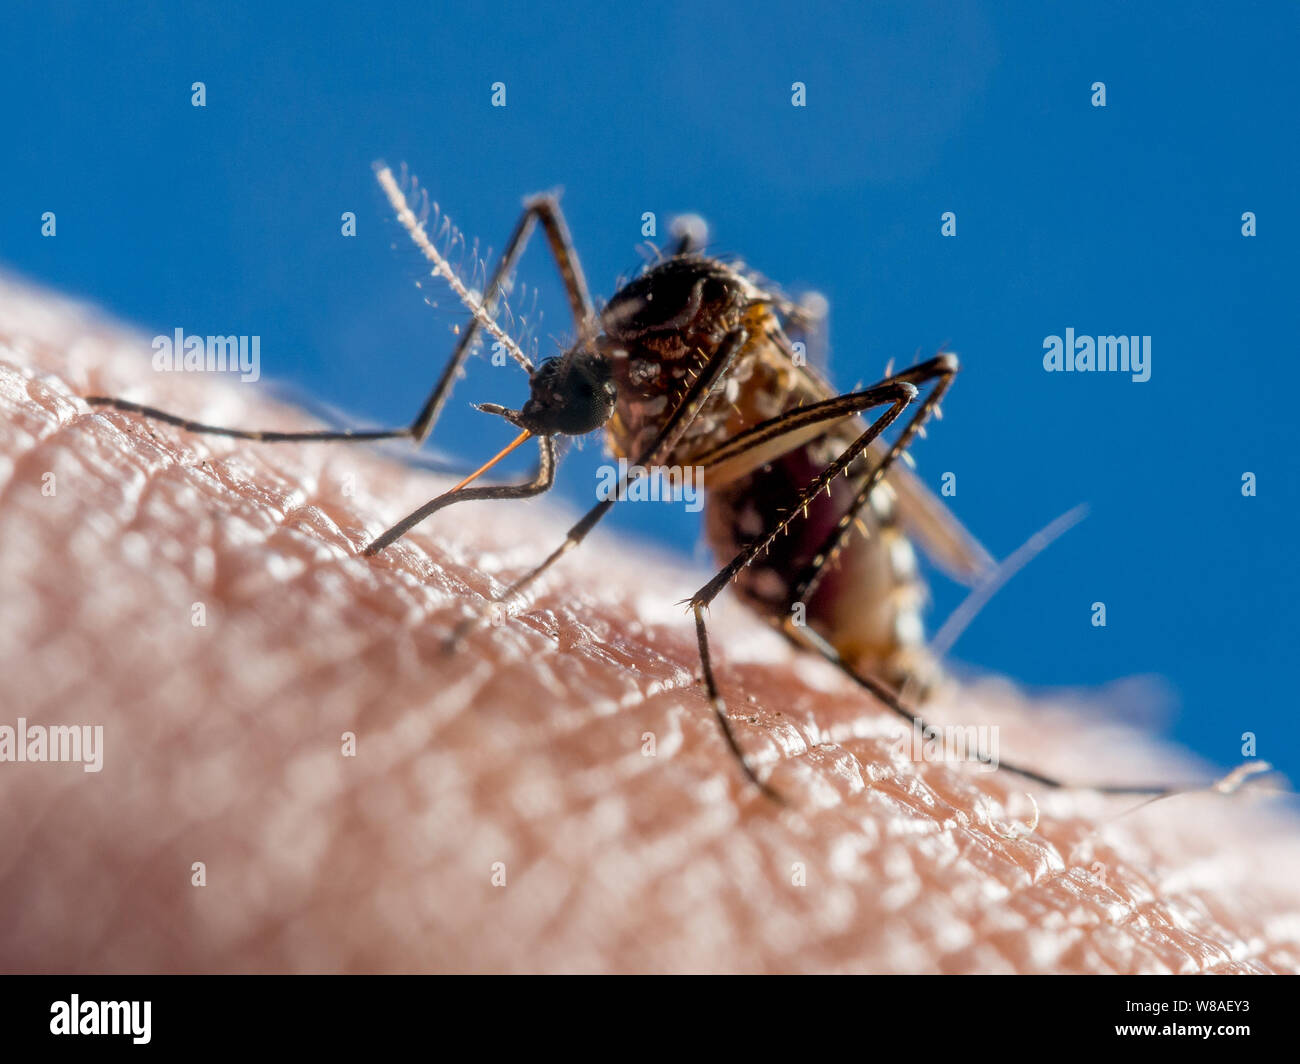 Close-up di una febbre dengue (zanzara Aedes aegypti) alimentazione del sangue umano Foto Stock